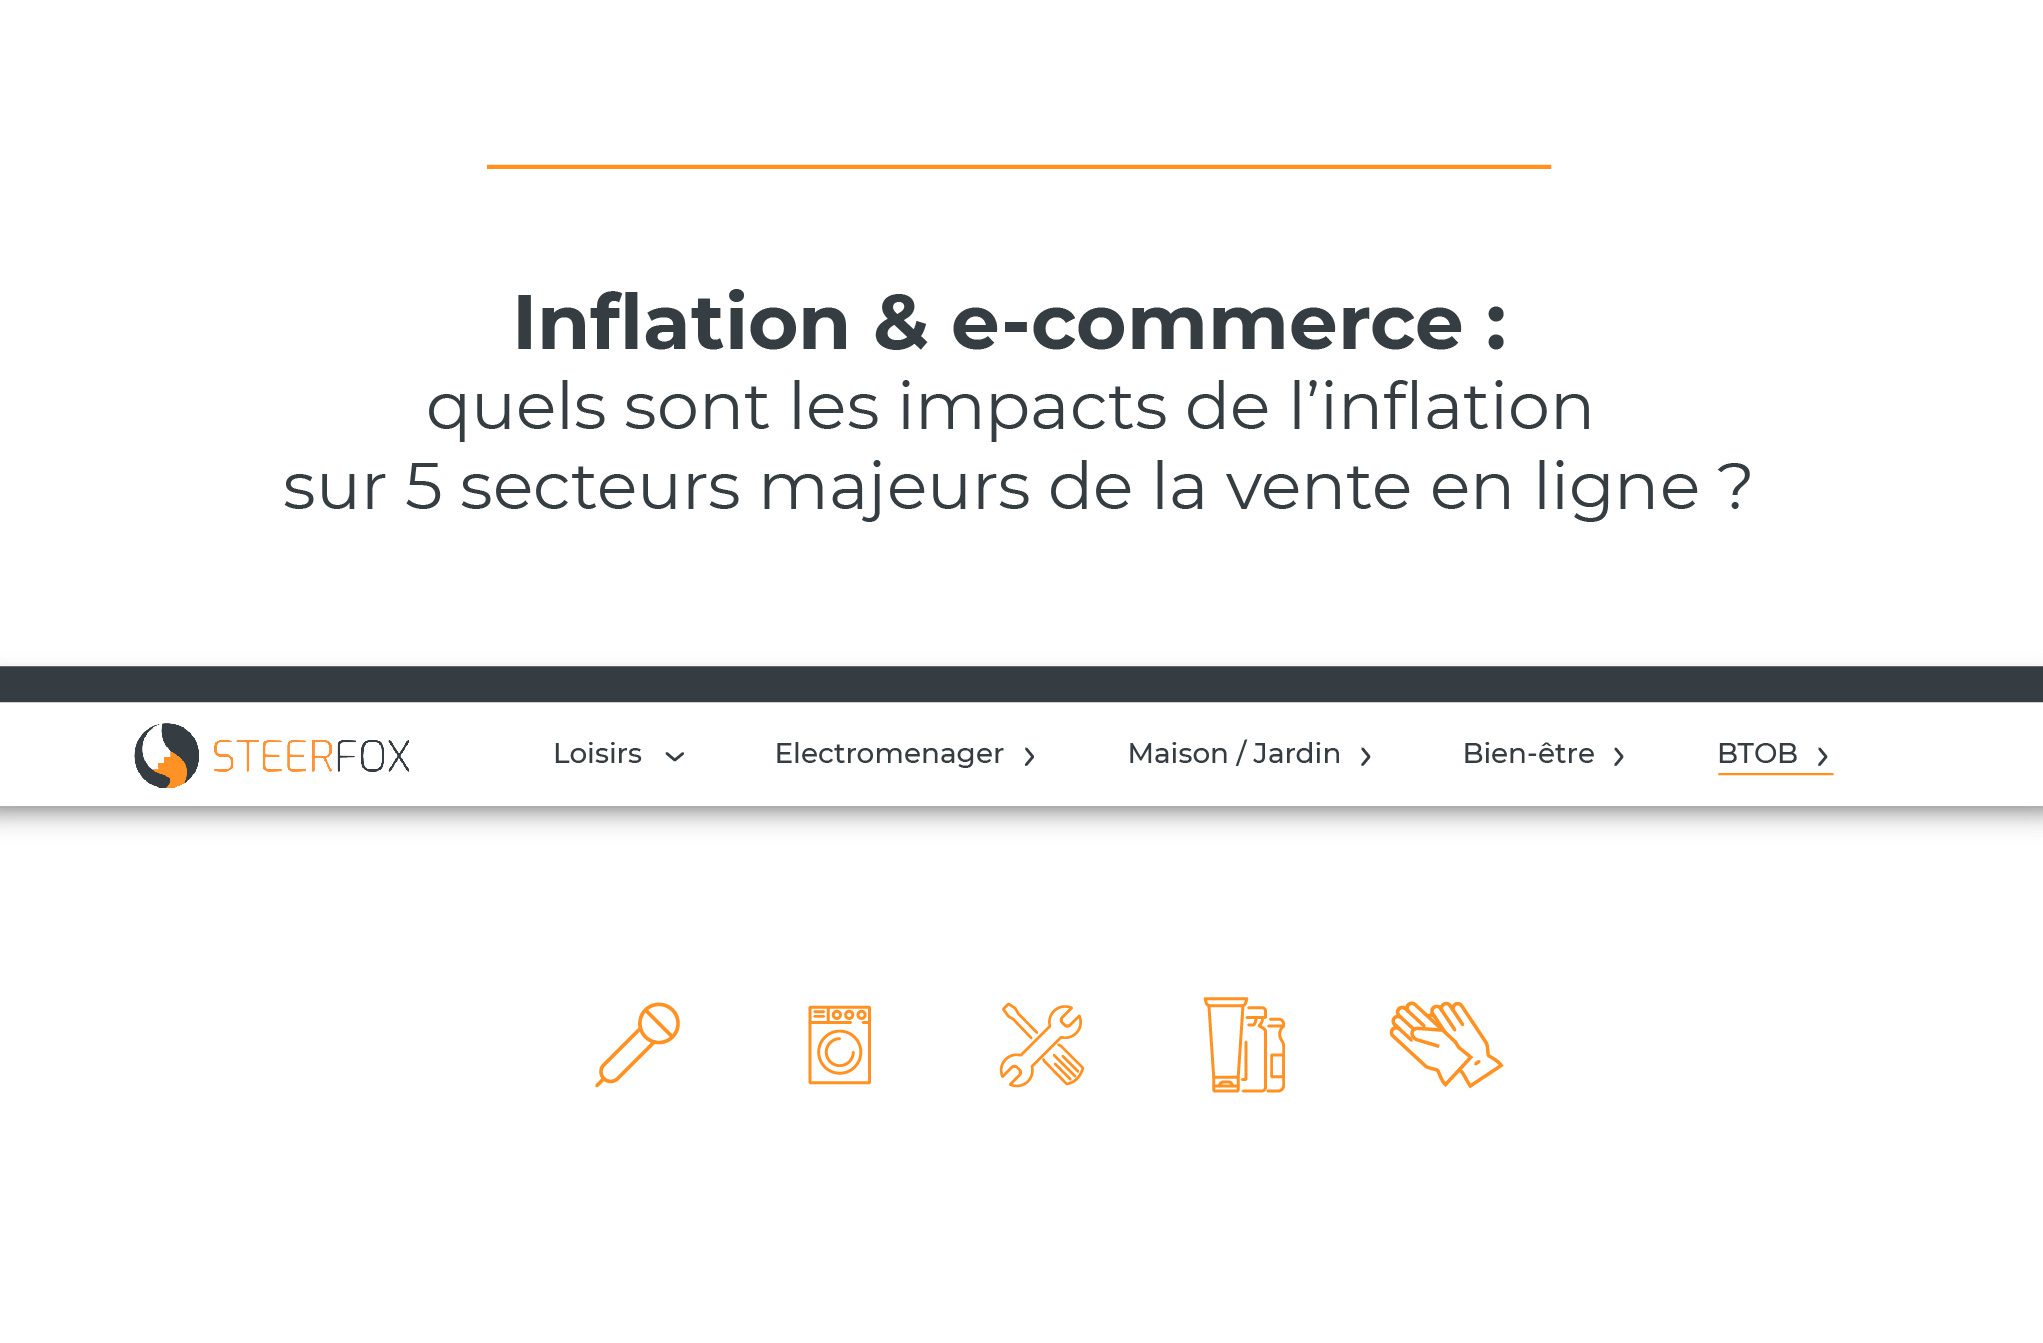 Inflation & E-commerce : quels sont les impacts de l’inflation sur 5 secteurs majeurs de la vente en ligne ?